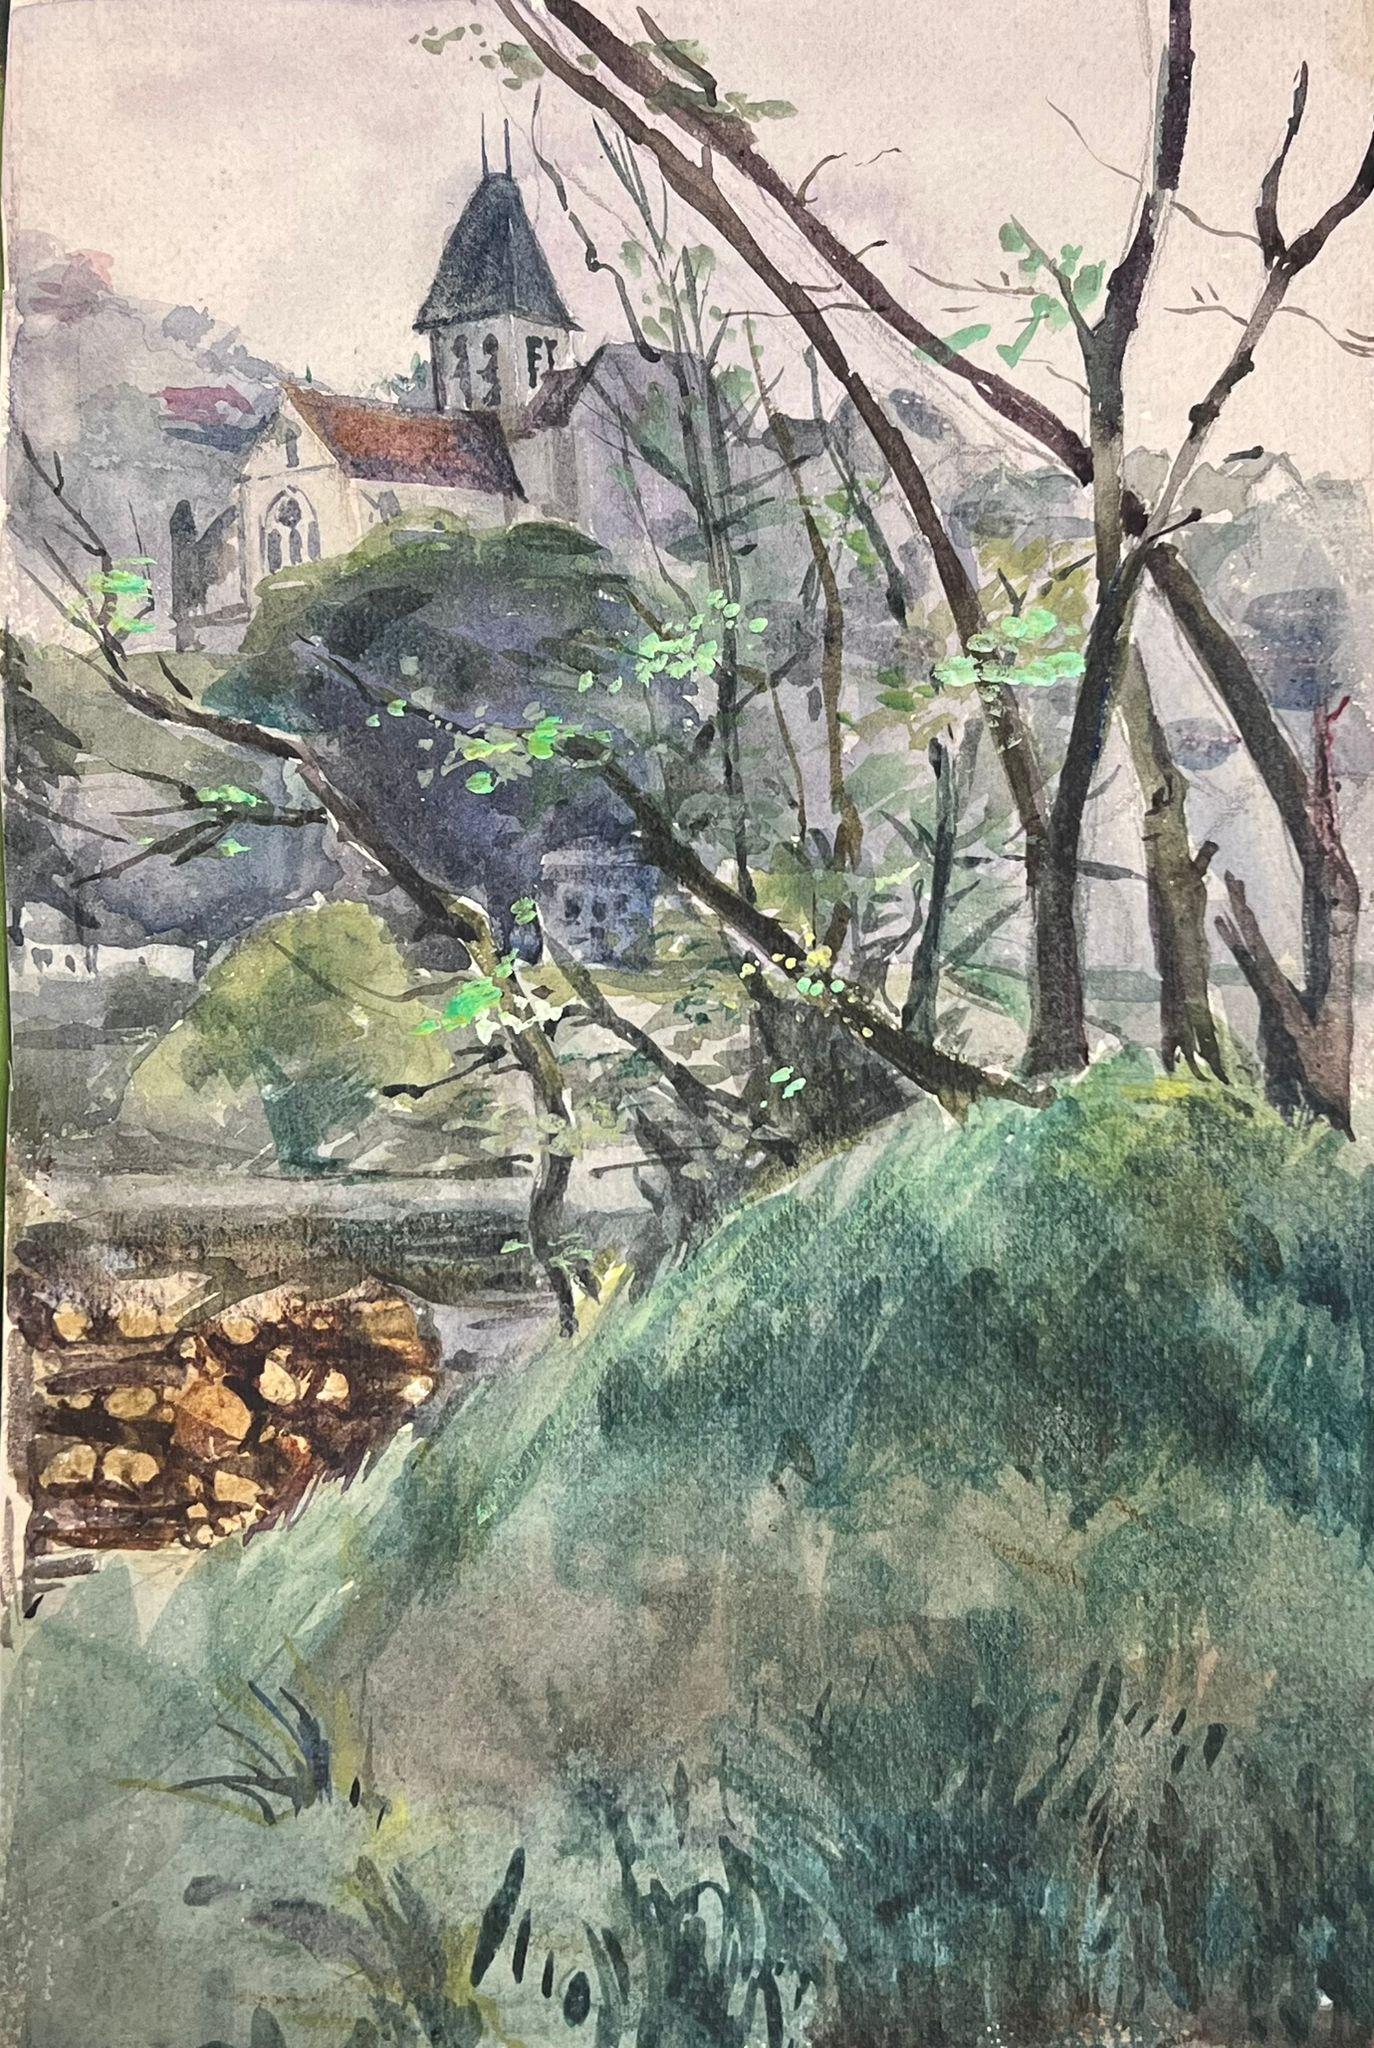 Französische Landschaft
von Louise Alix, französische Impressionistin der 1950er Jahre 
Aquarell auf Künstlerpapier, ungerahmt
Gemälde: 11 x 7,5 Zoll
Provenienz: aus einer großen Privatsammlung dieses Künstlers in Nordfrankreich
Zustand: originaler,